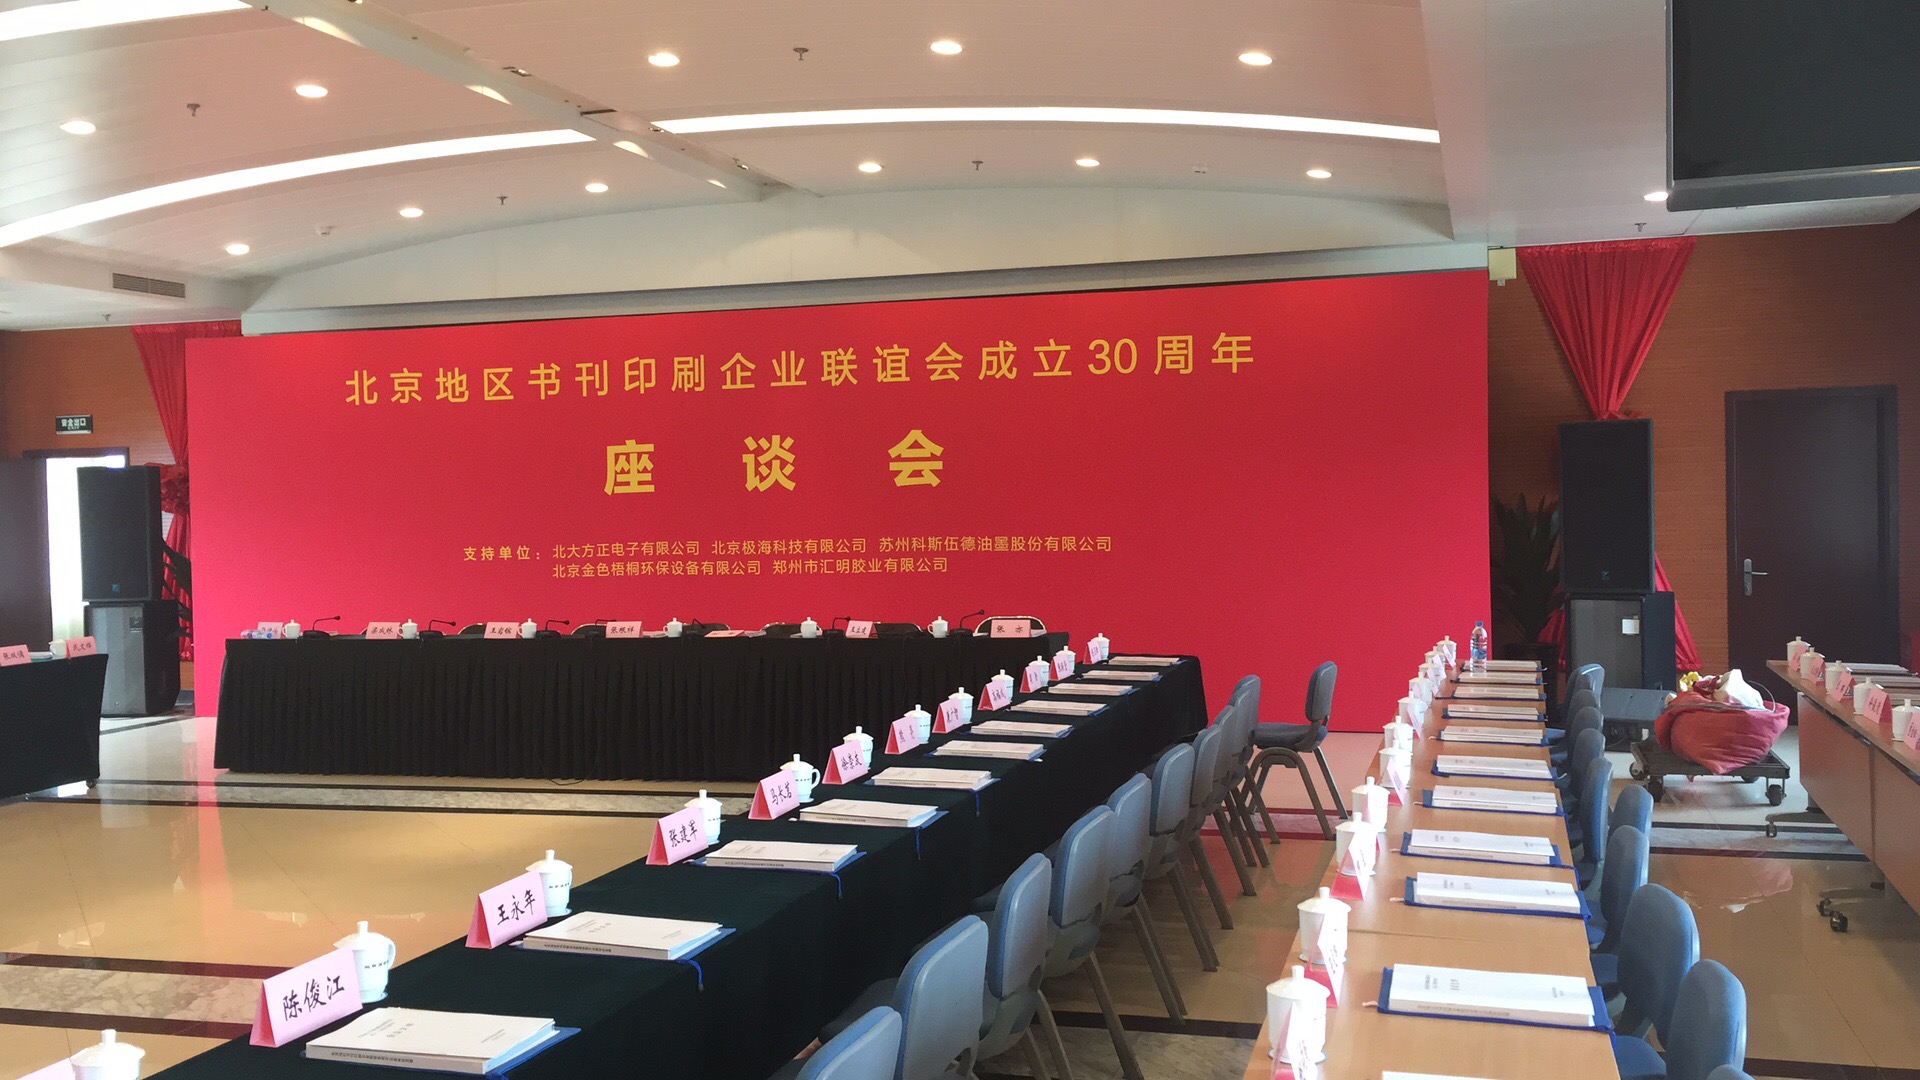 北京书刊印刷30年座谈会--背景板搭建公司